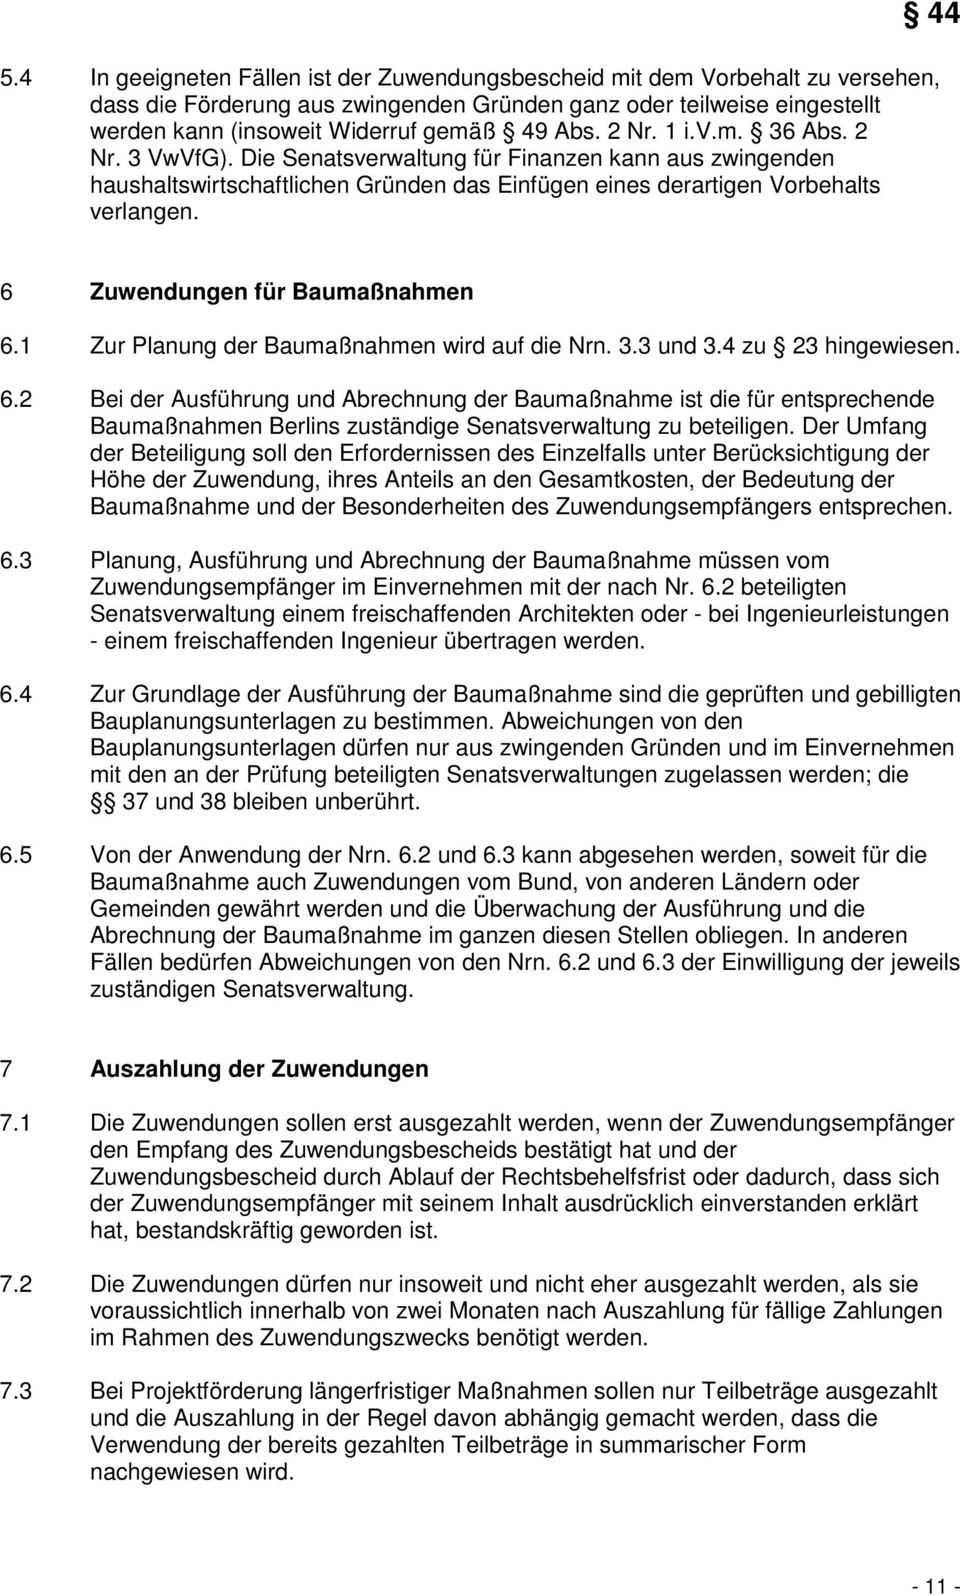 44 6 Zuwendungen für Baumaßnahmen 6.1 Zur Planung der Baumaßnahmen wird auf die Nrn. 3.3 und 3.4 zu 23 hingewiesen. 6.2 Bei der Ausführung und Abrechnung der Baumaßnahme ist die für entsprechende Baumaßnahmen Berlins zuständige Senatsverwaltung zu beteiligen.